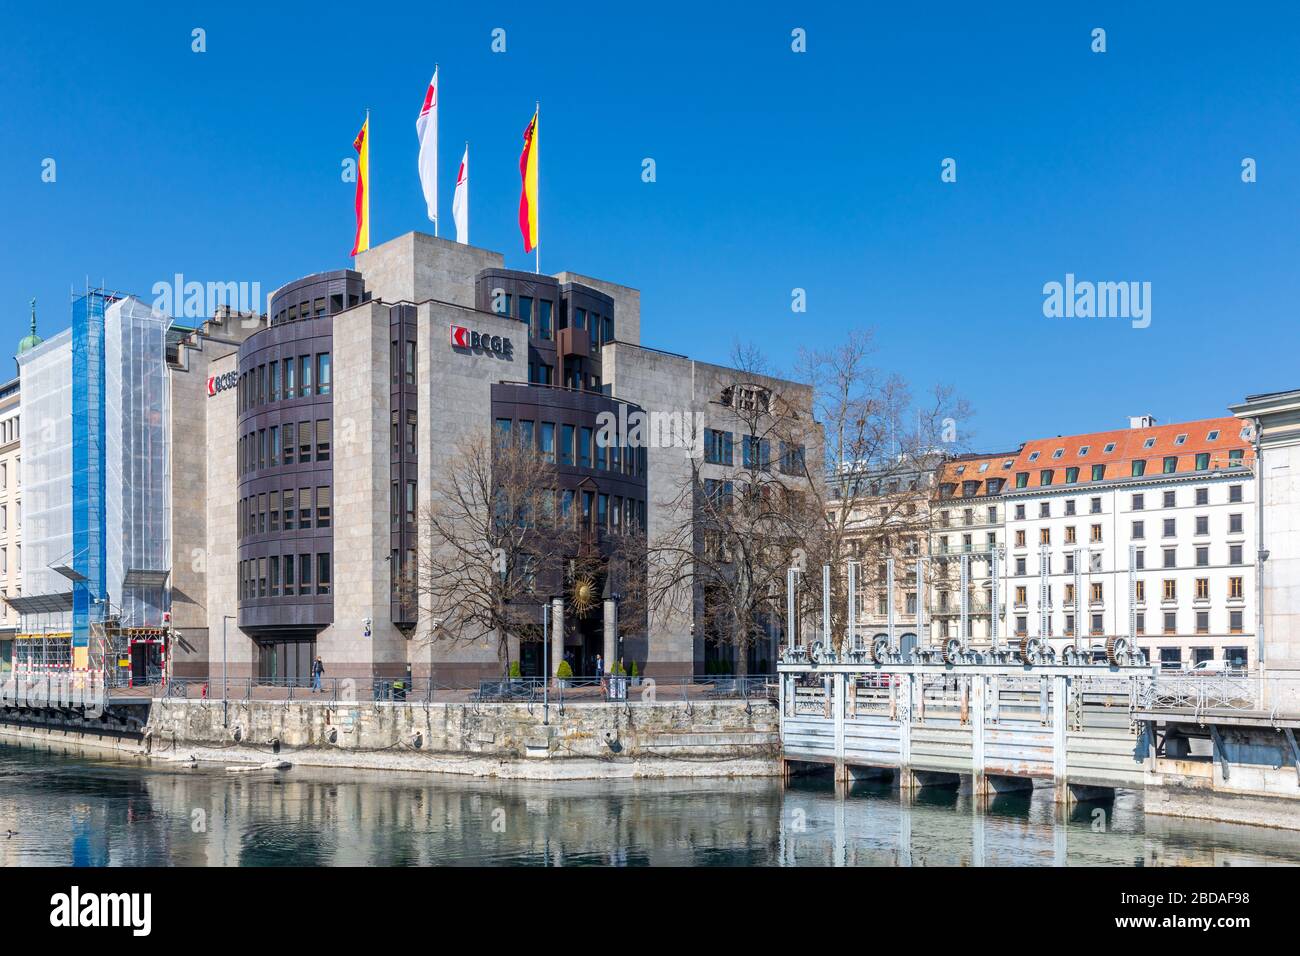 Banque cantonale de geneve fotografías e imágenes de alta resolución - Alamy